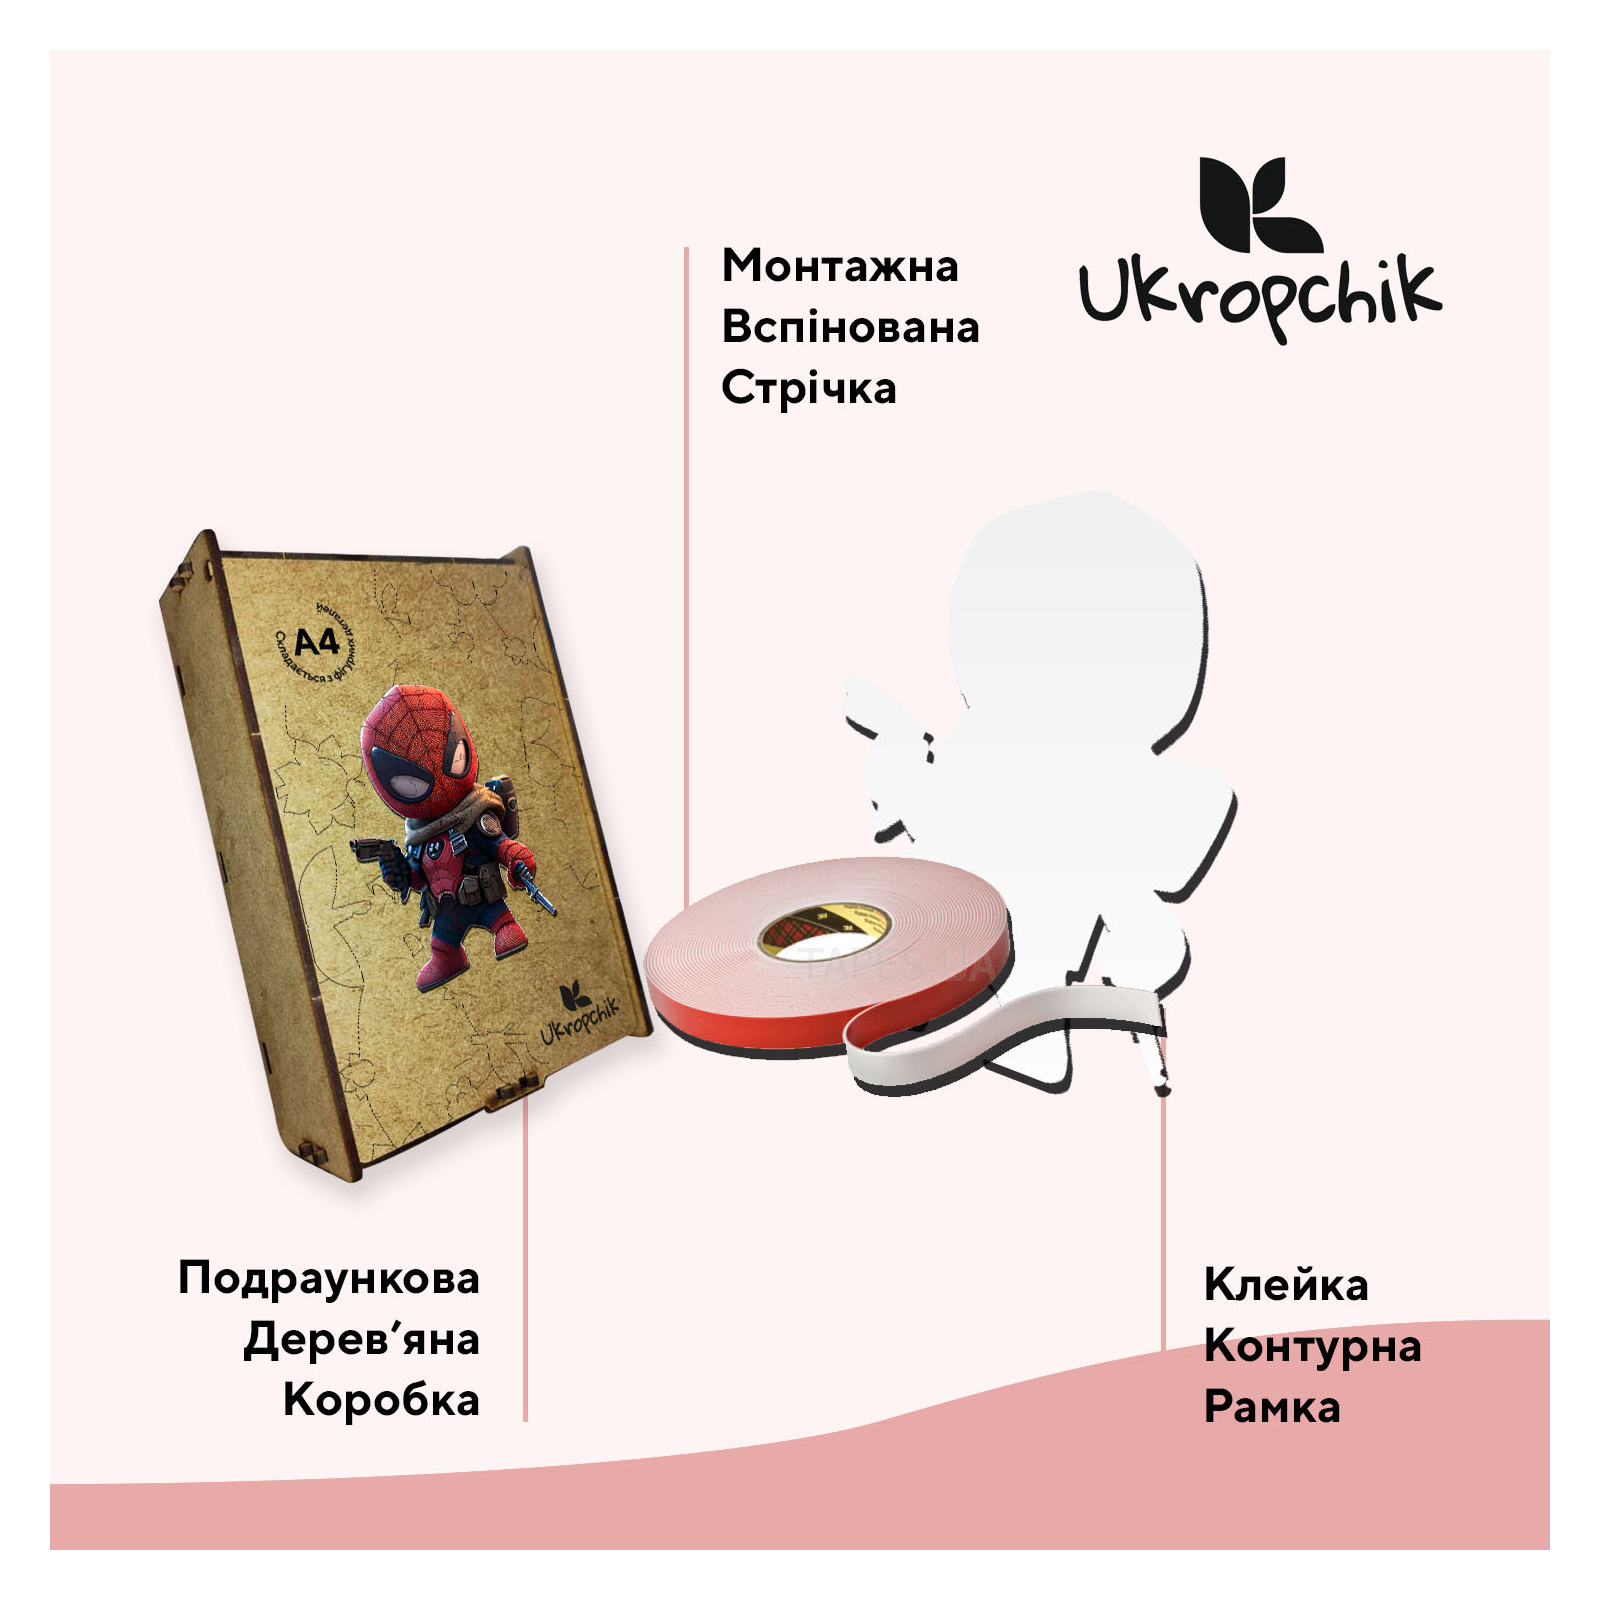 Пазл Ukropchik деревянный Супергерой Дедпул size - M в коробке с набором-рамкой (Deadpool Superhero A4) изображение 3